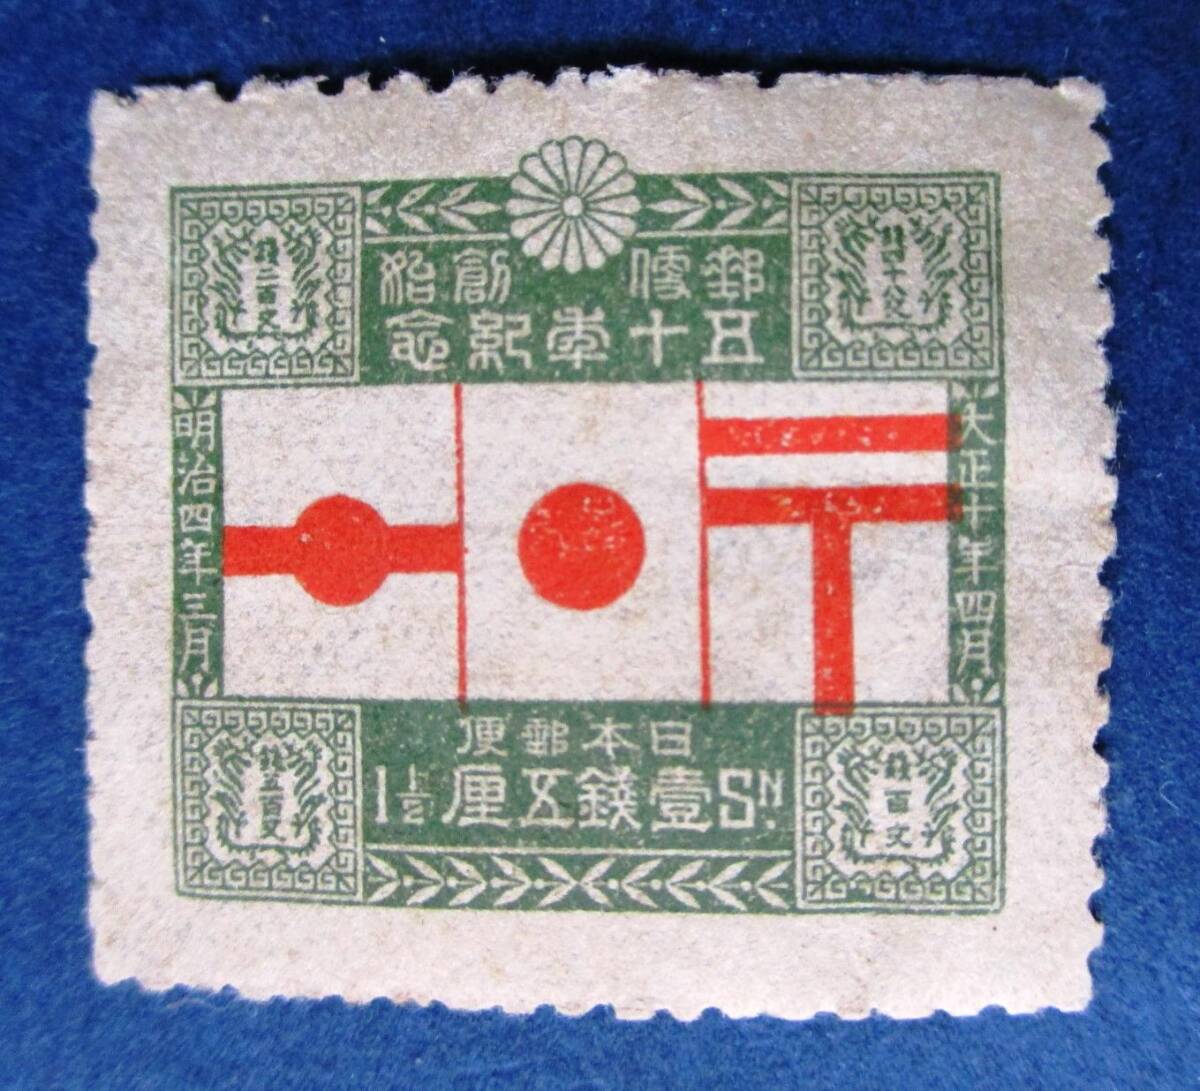 日本切手 郵便創始50年記念 1銭５厘切手 SB9 ほぼ美品です。画像参照して下さい。の画像3